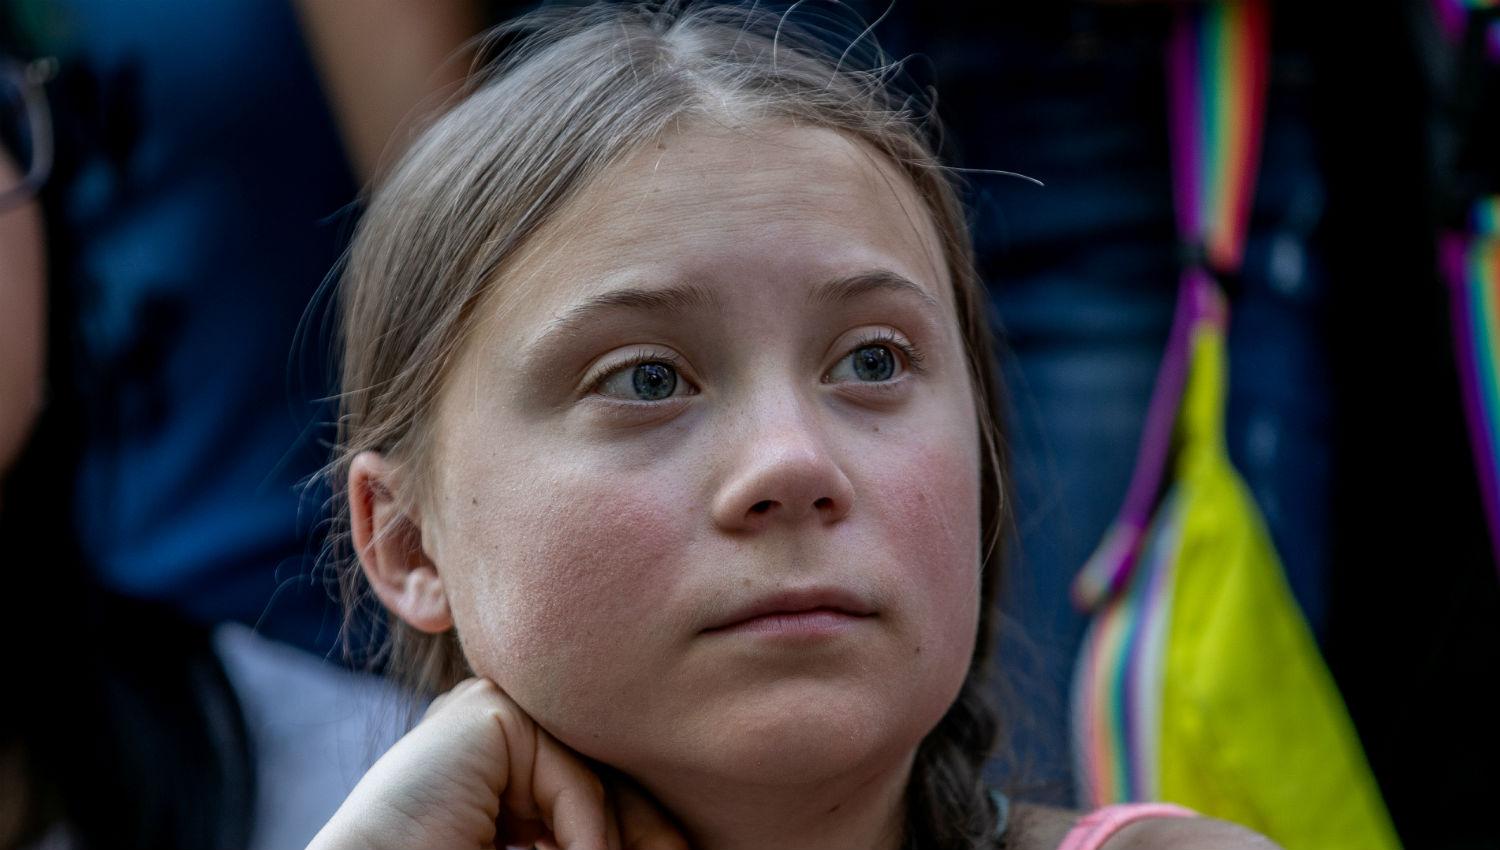 La joven activista Greta Thunberg ganó el “Nobel alternativo” por su lucha ecologista